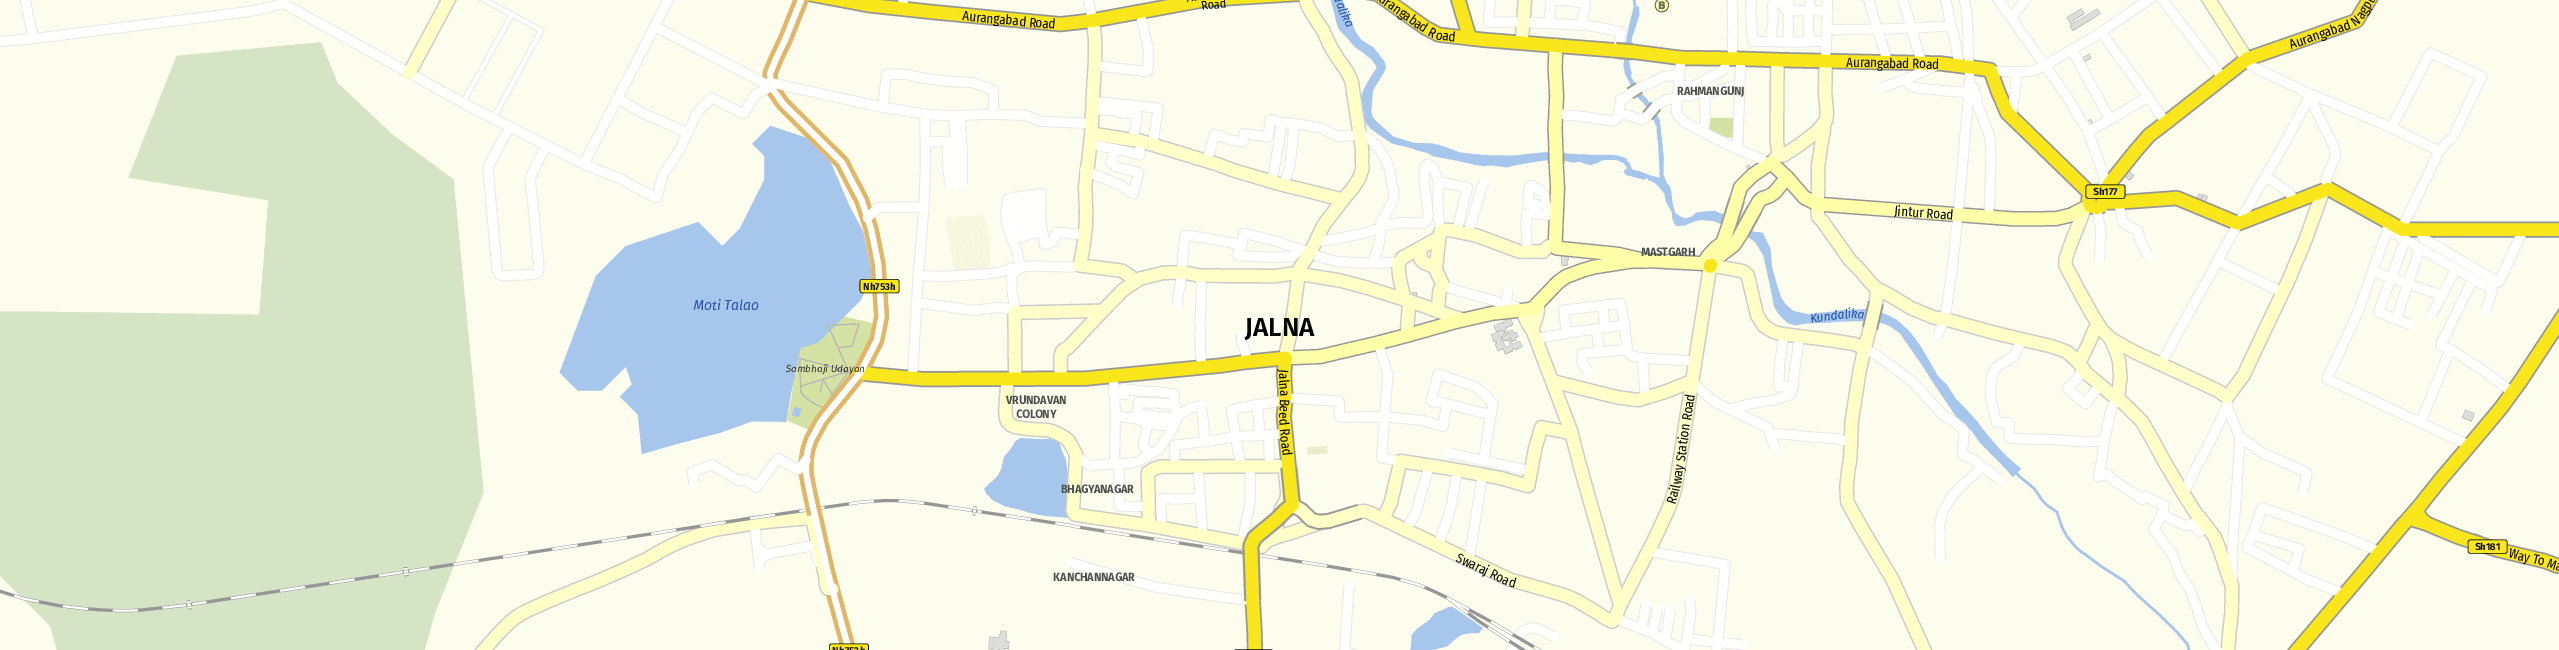 Stadtplan Jalna zum Downloaden.